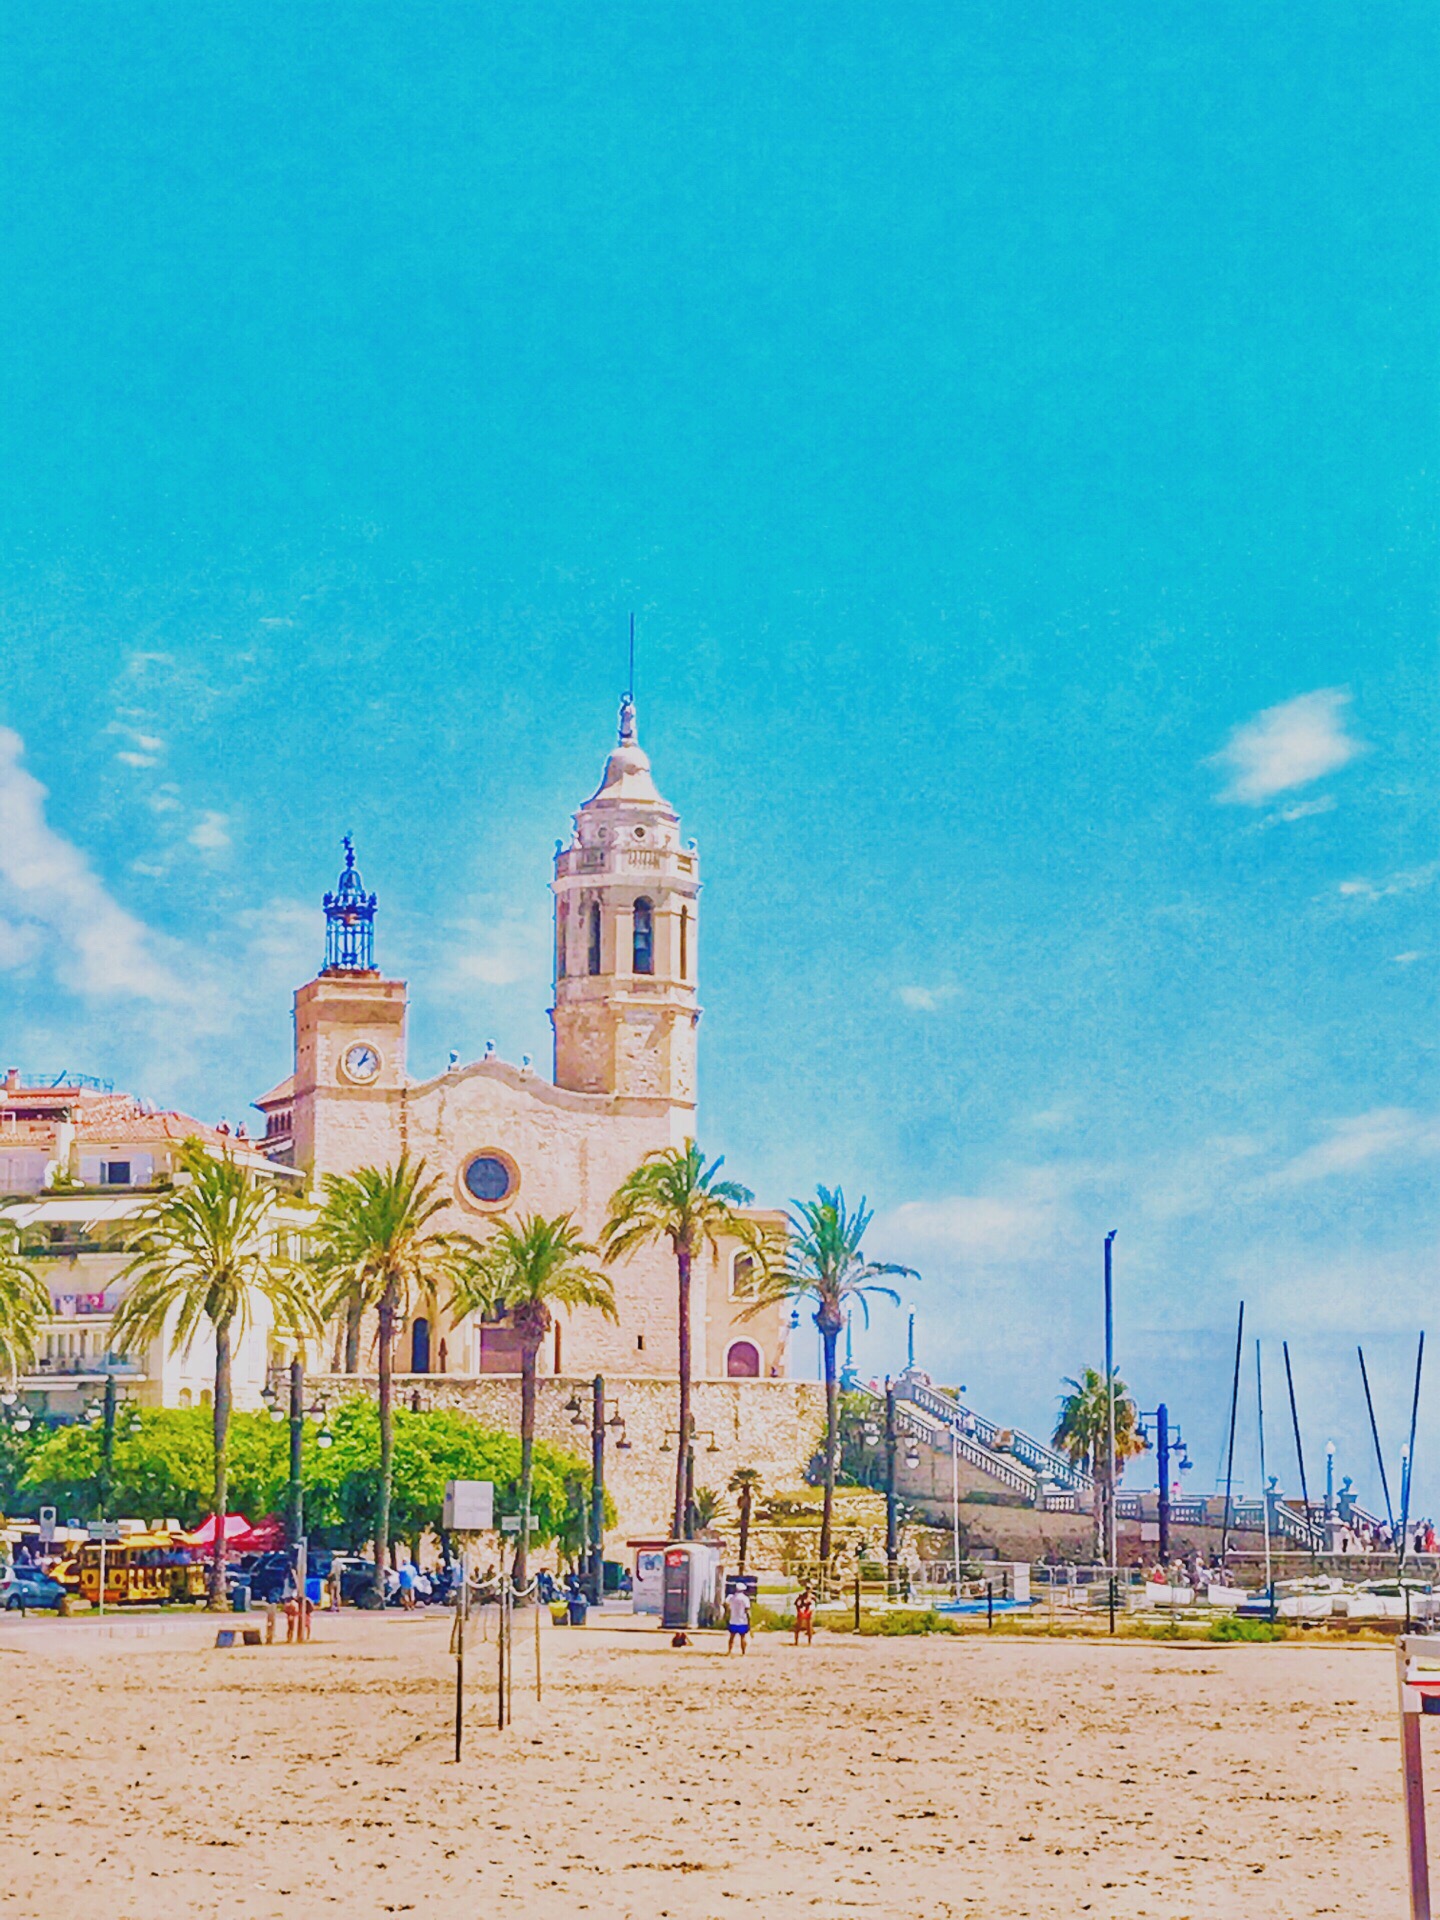 Sitges|每天都是狂欢节 每隔几个月我都要去的海滨小城！从巴塞罗那出发只需要不到40分钟左右。除